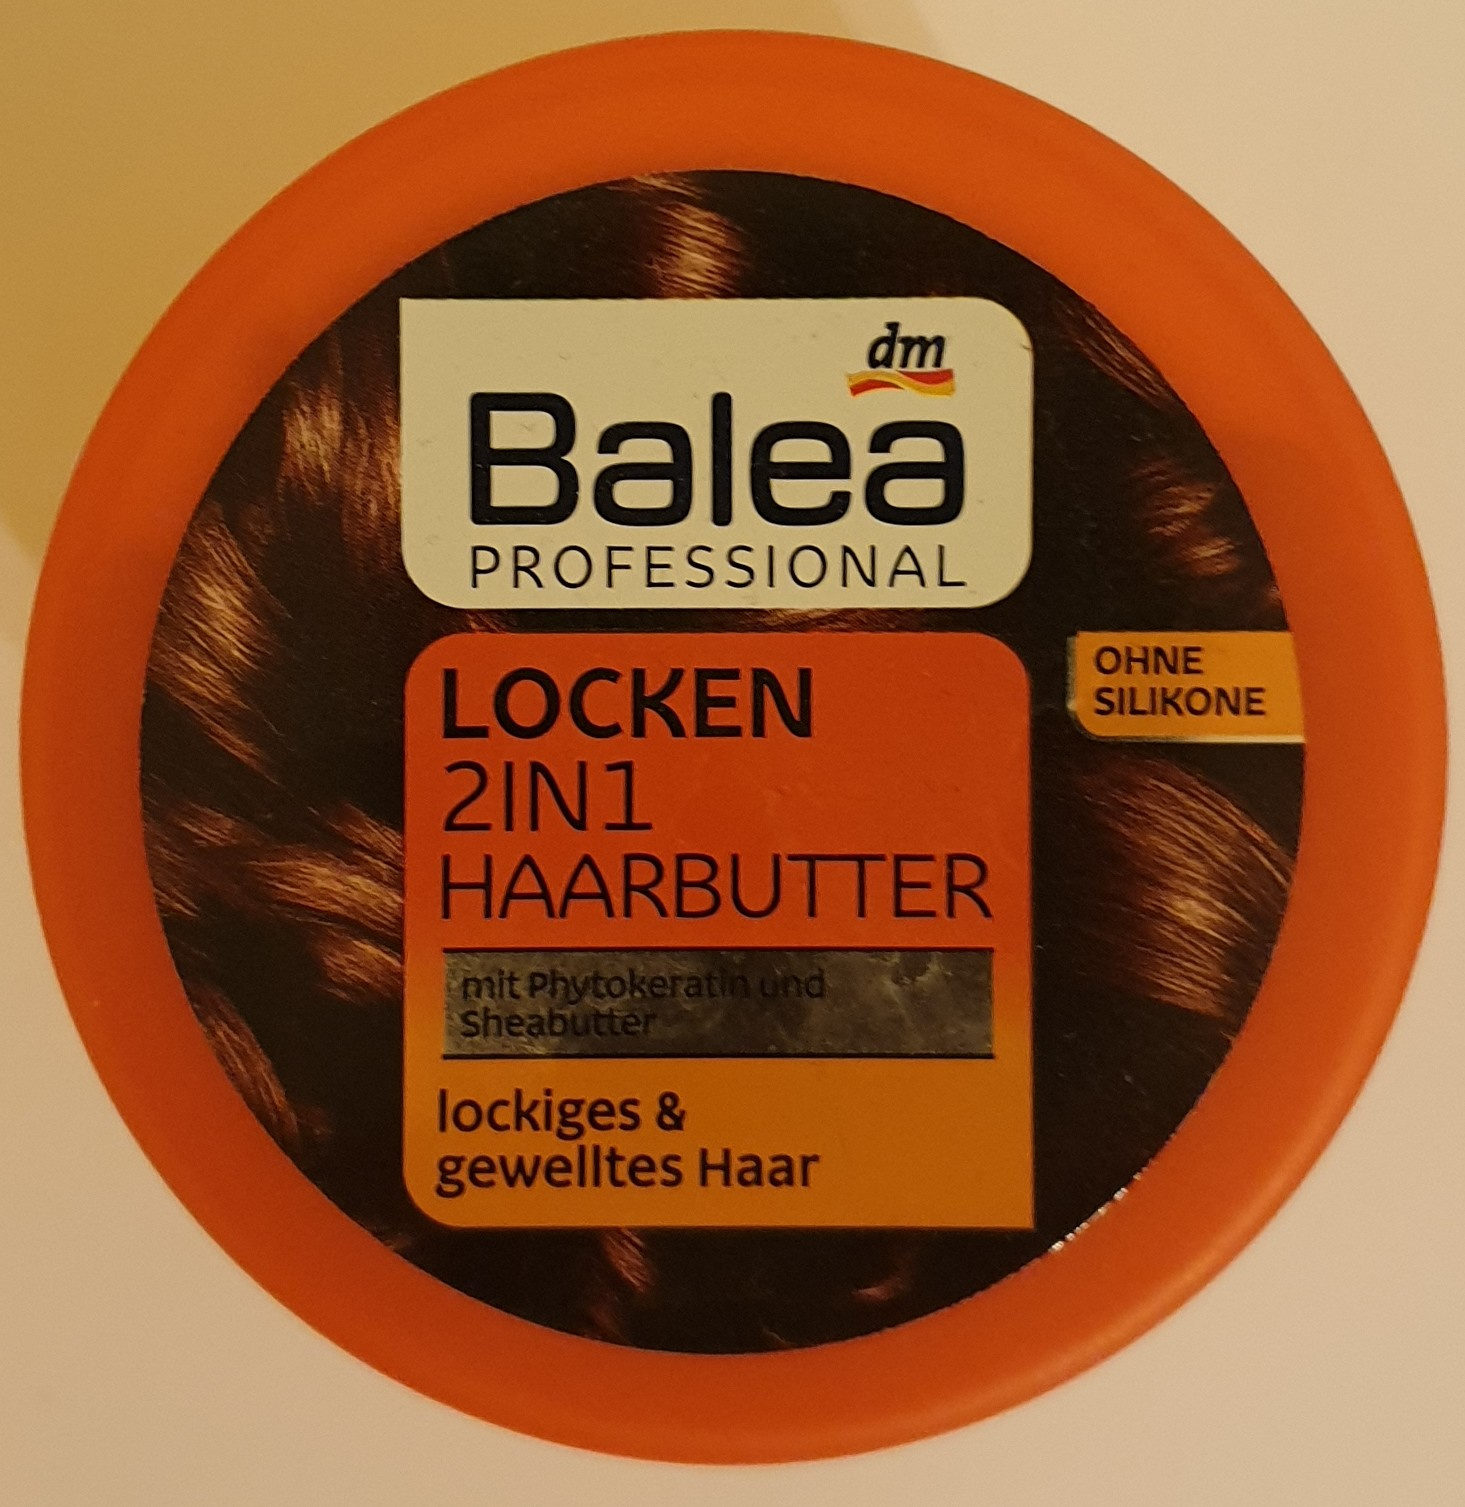 Locken 2in1 Haarbutter - Продукт - de